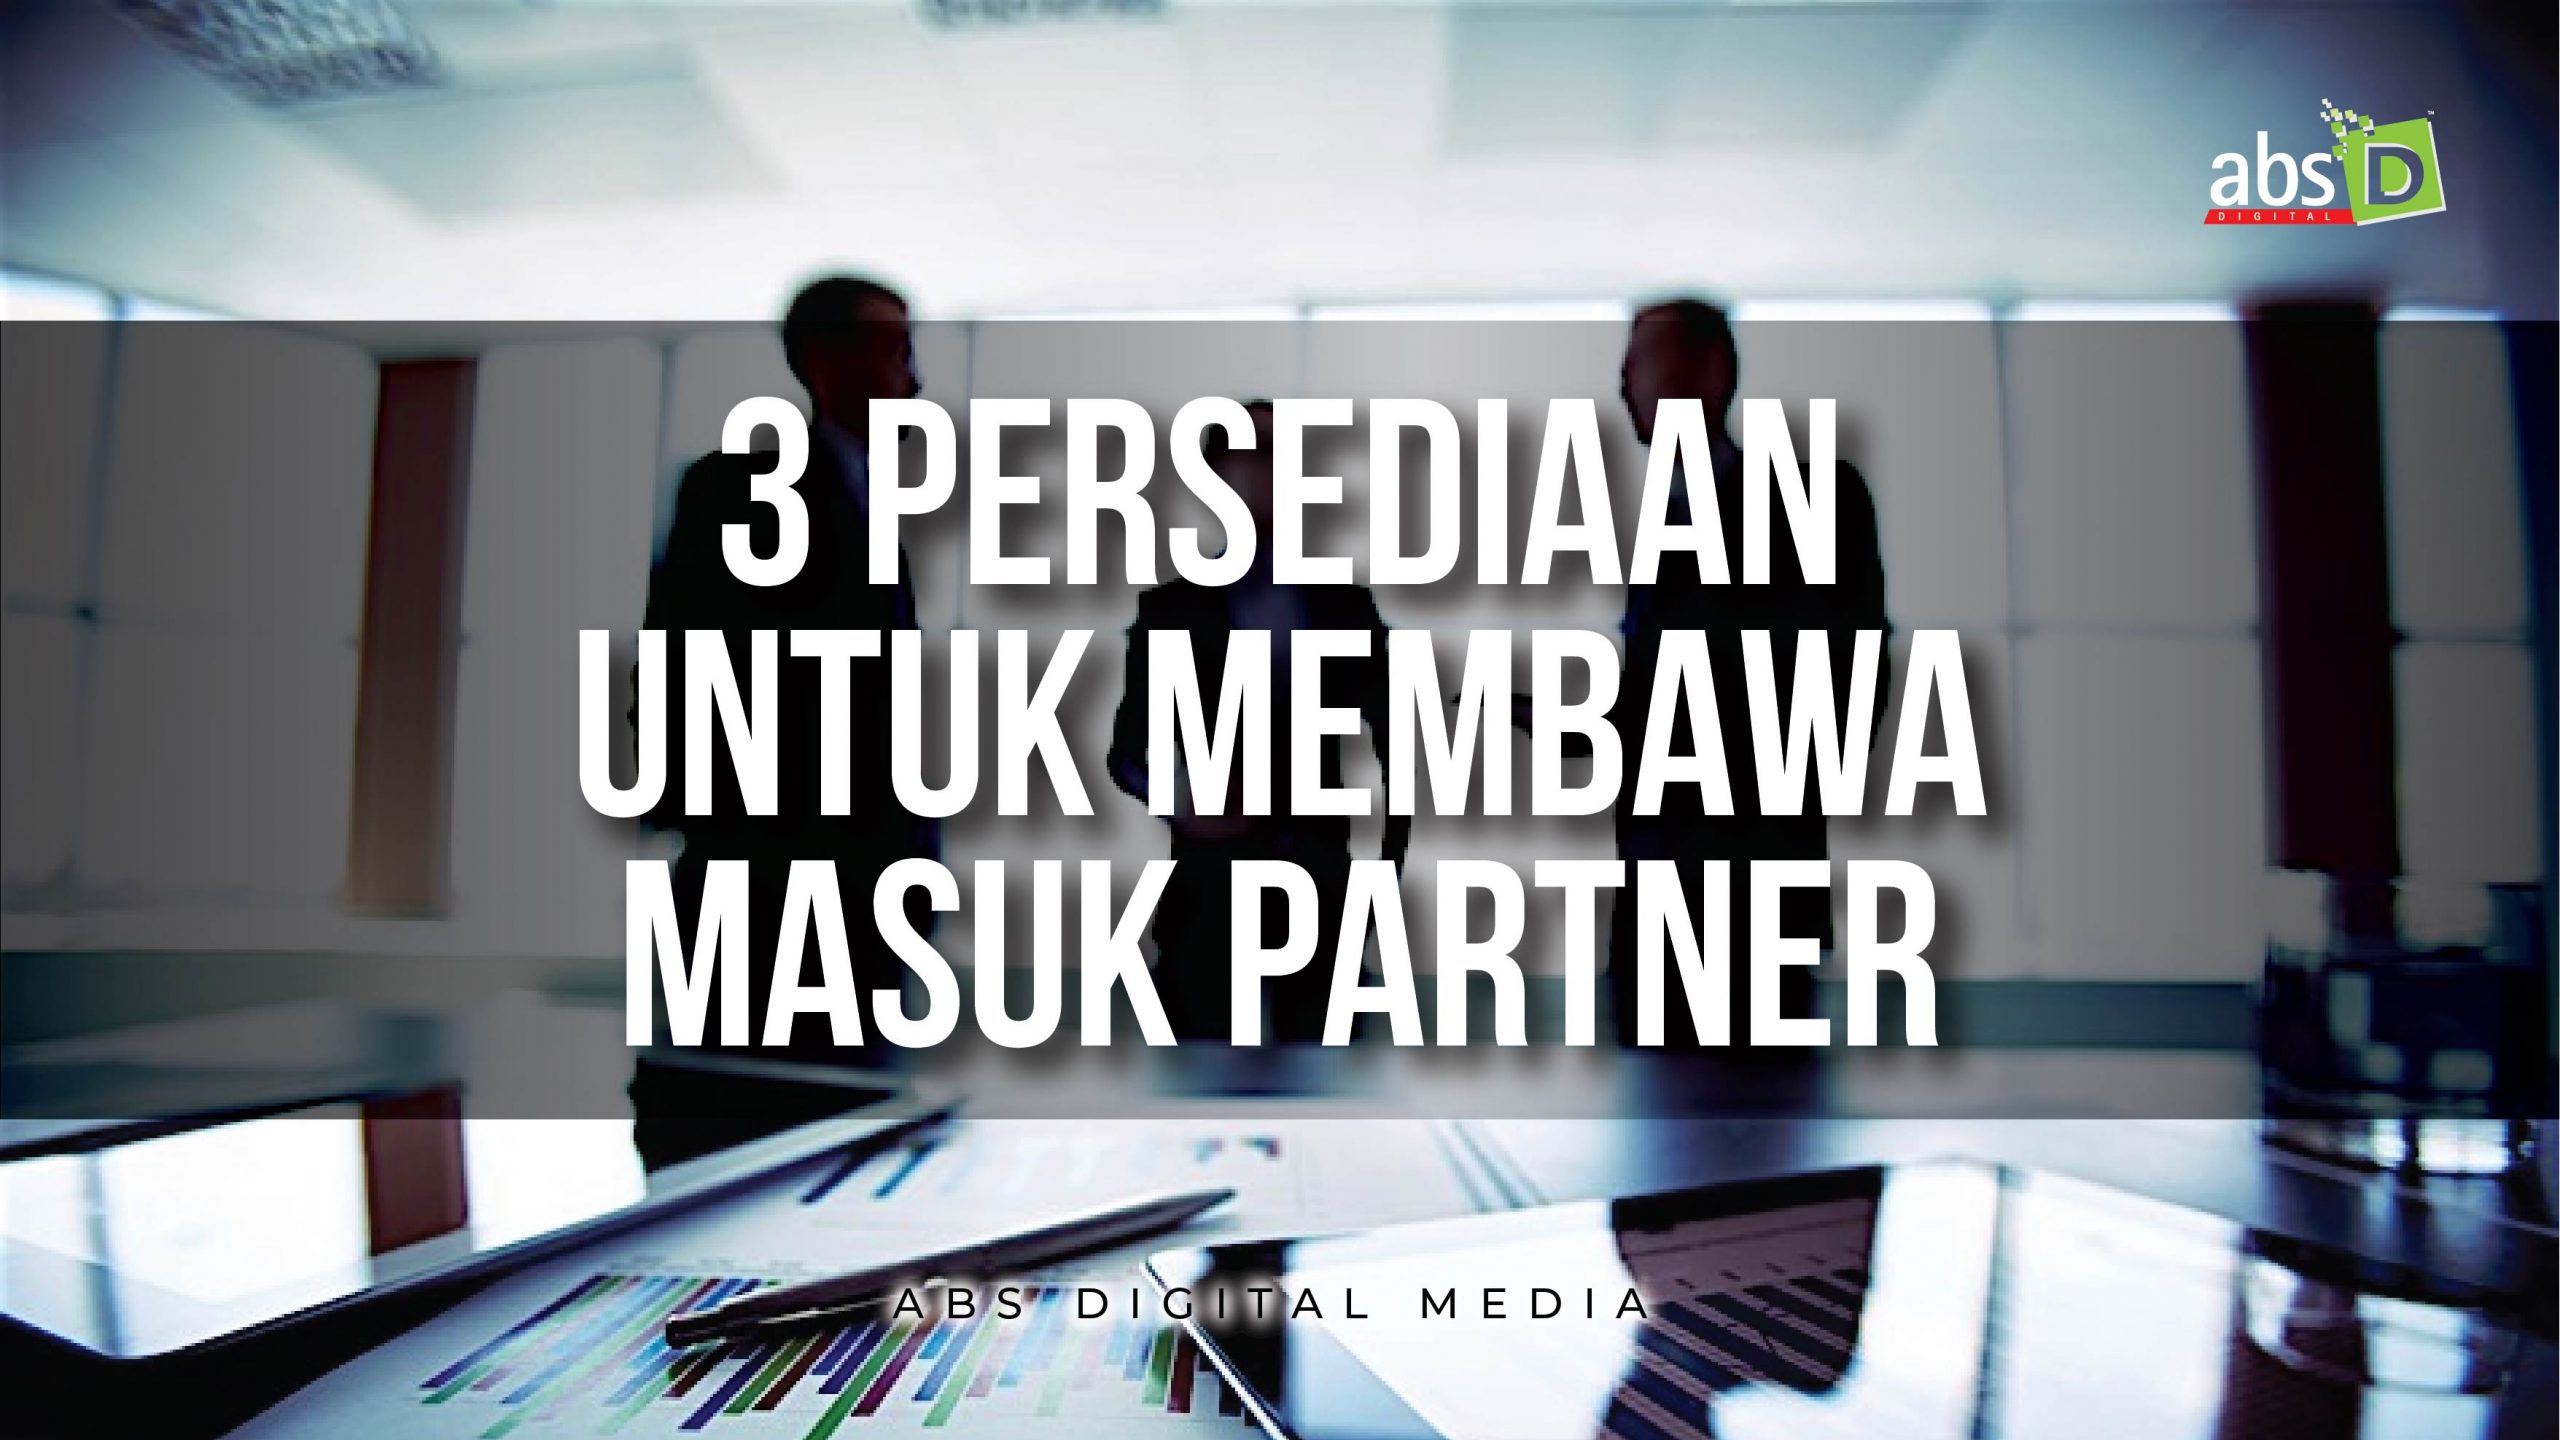 3 Persediaan Untuk Membawa Partner